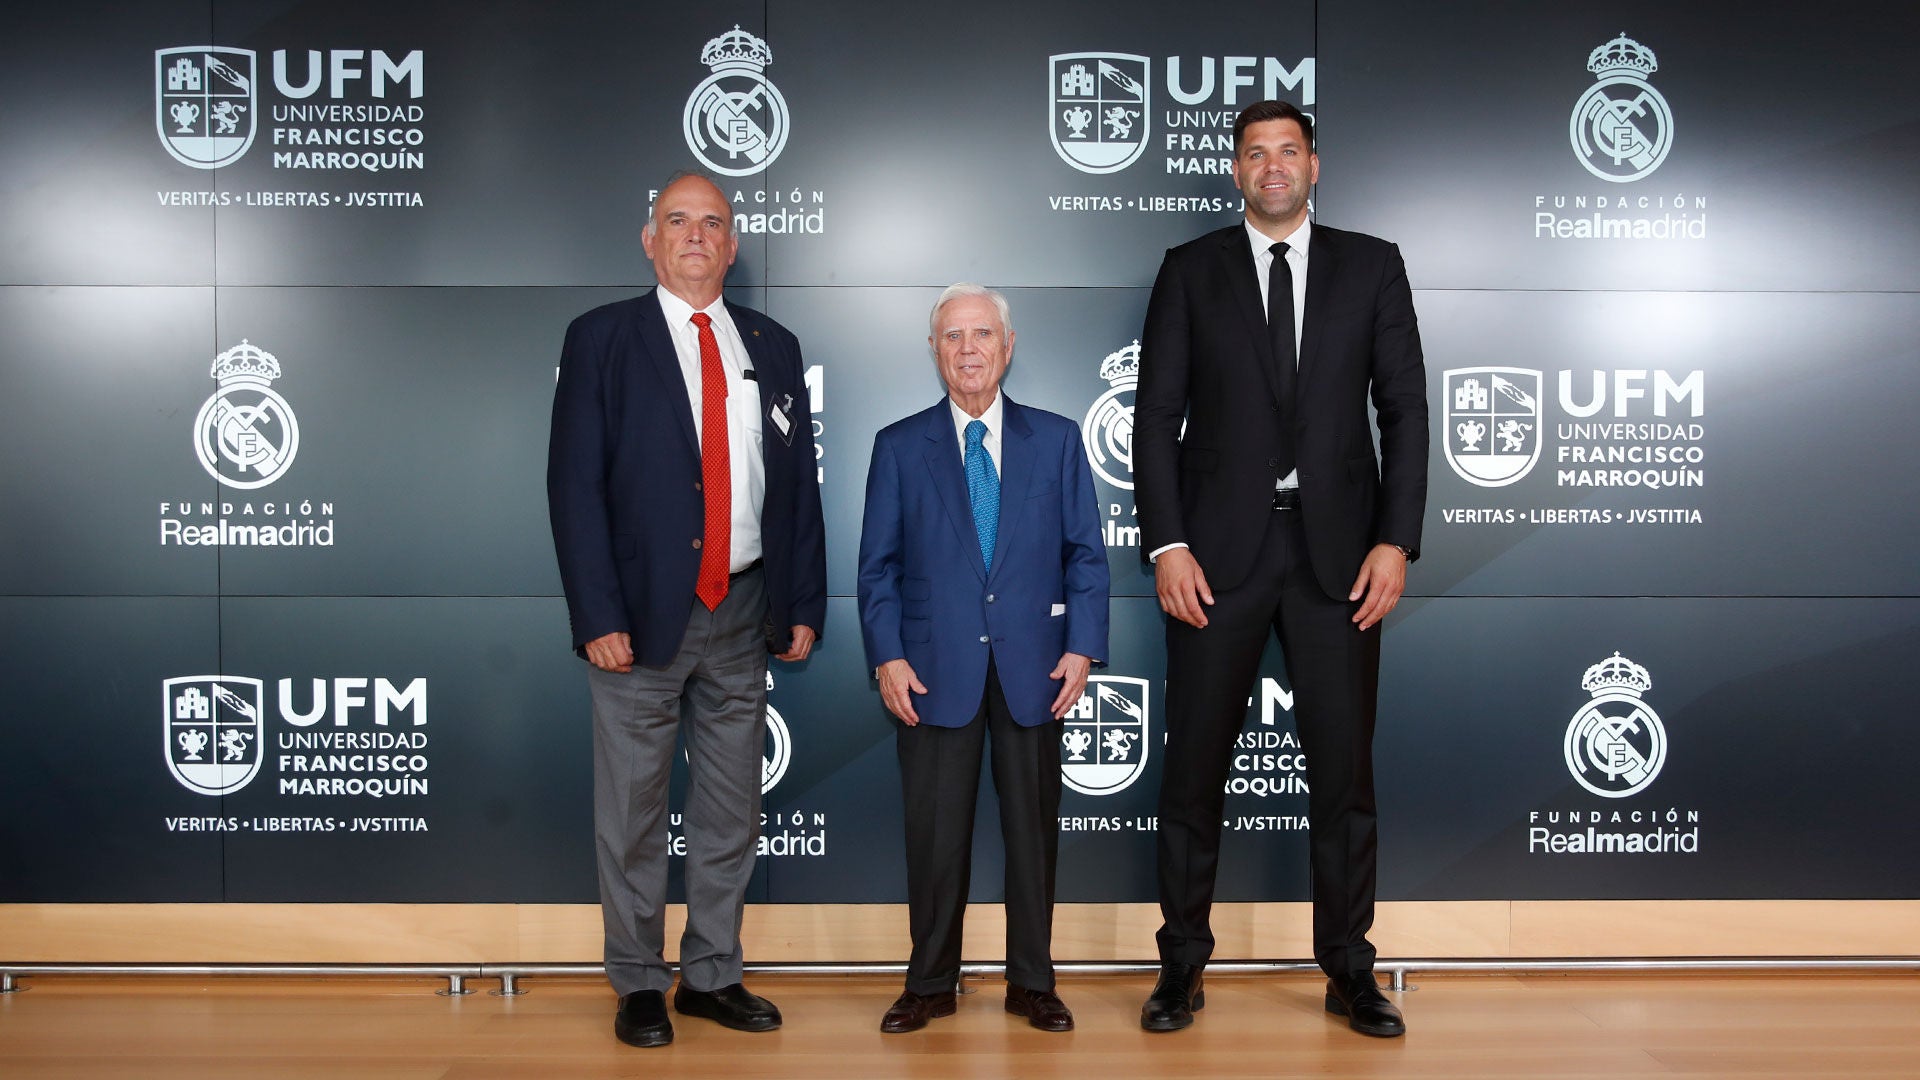 La UFM, primer promotor del programa ONE DAY de formación para empresas de la Fundación Real Madrid